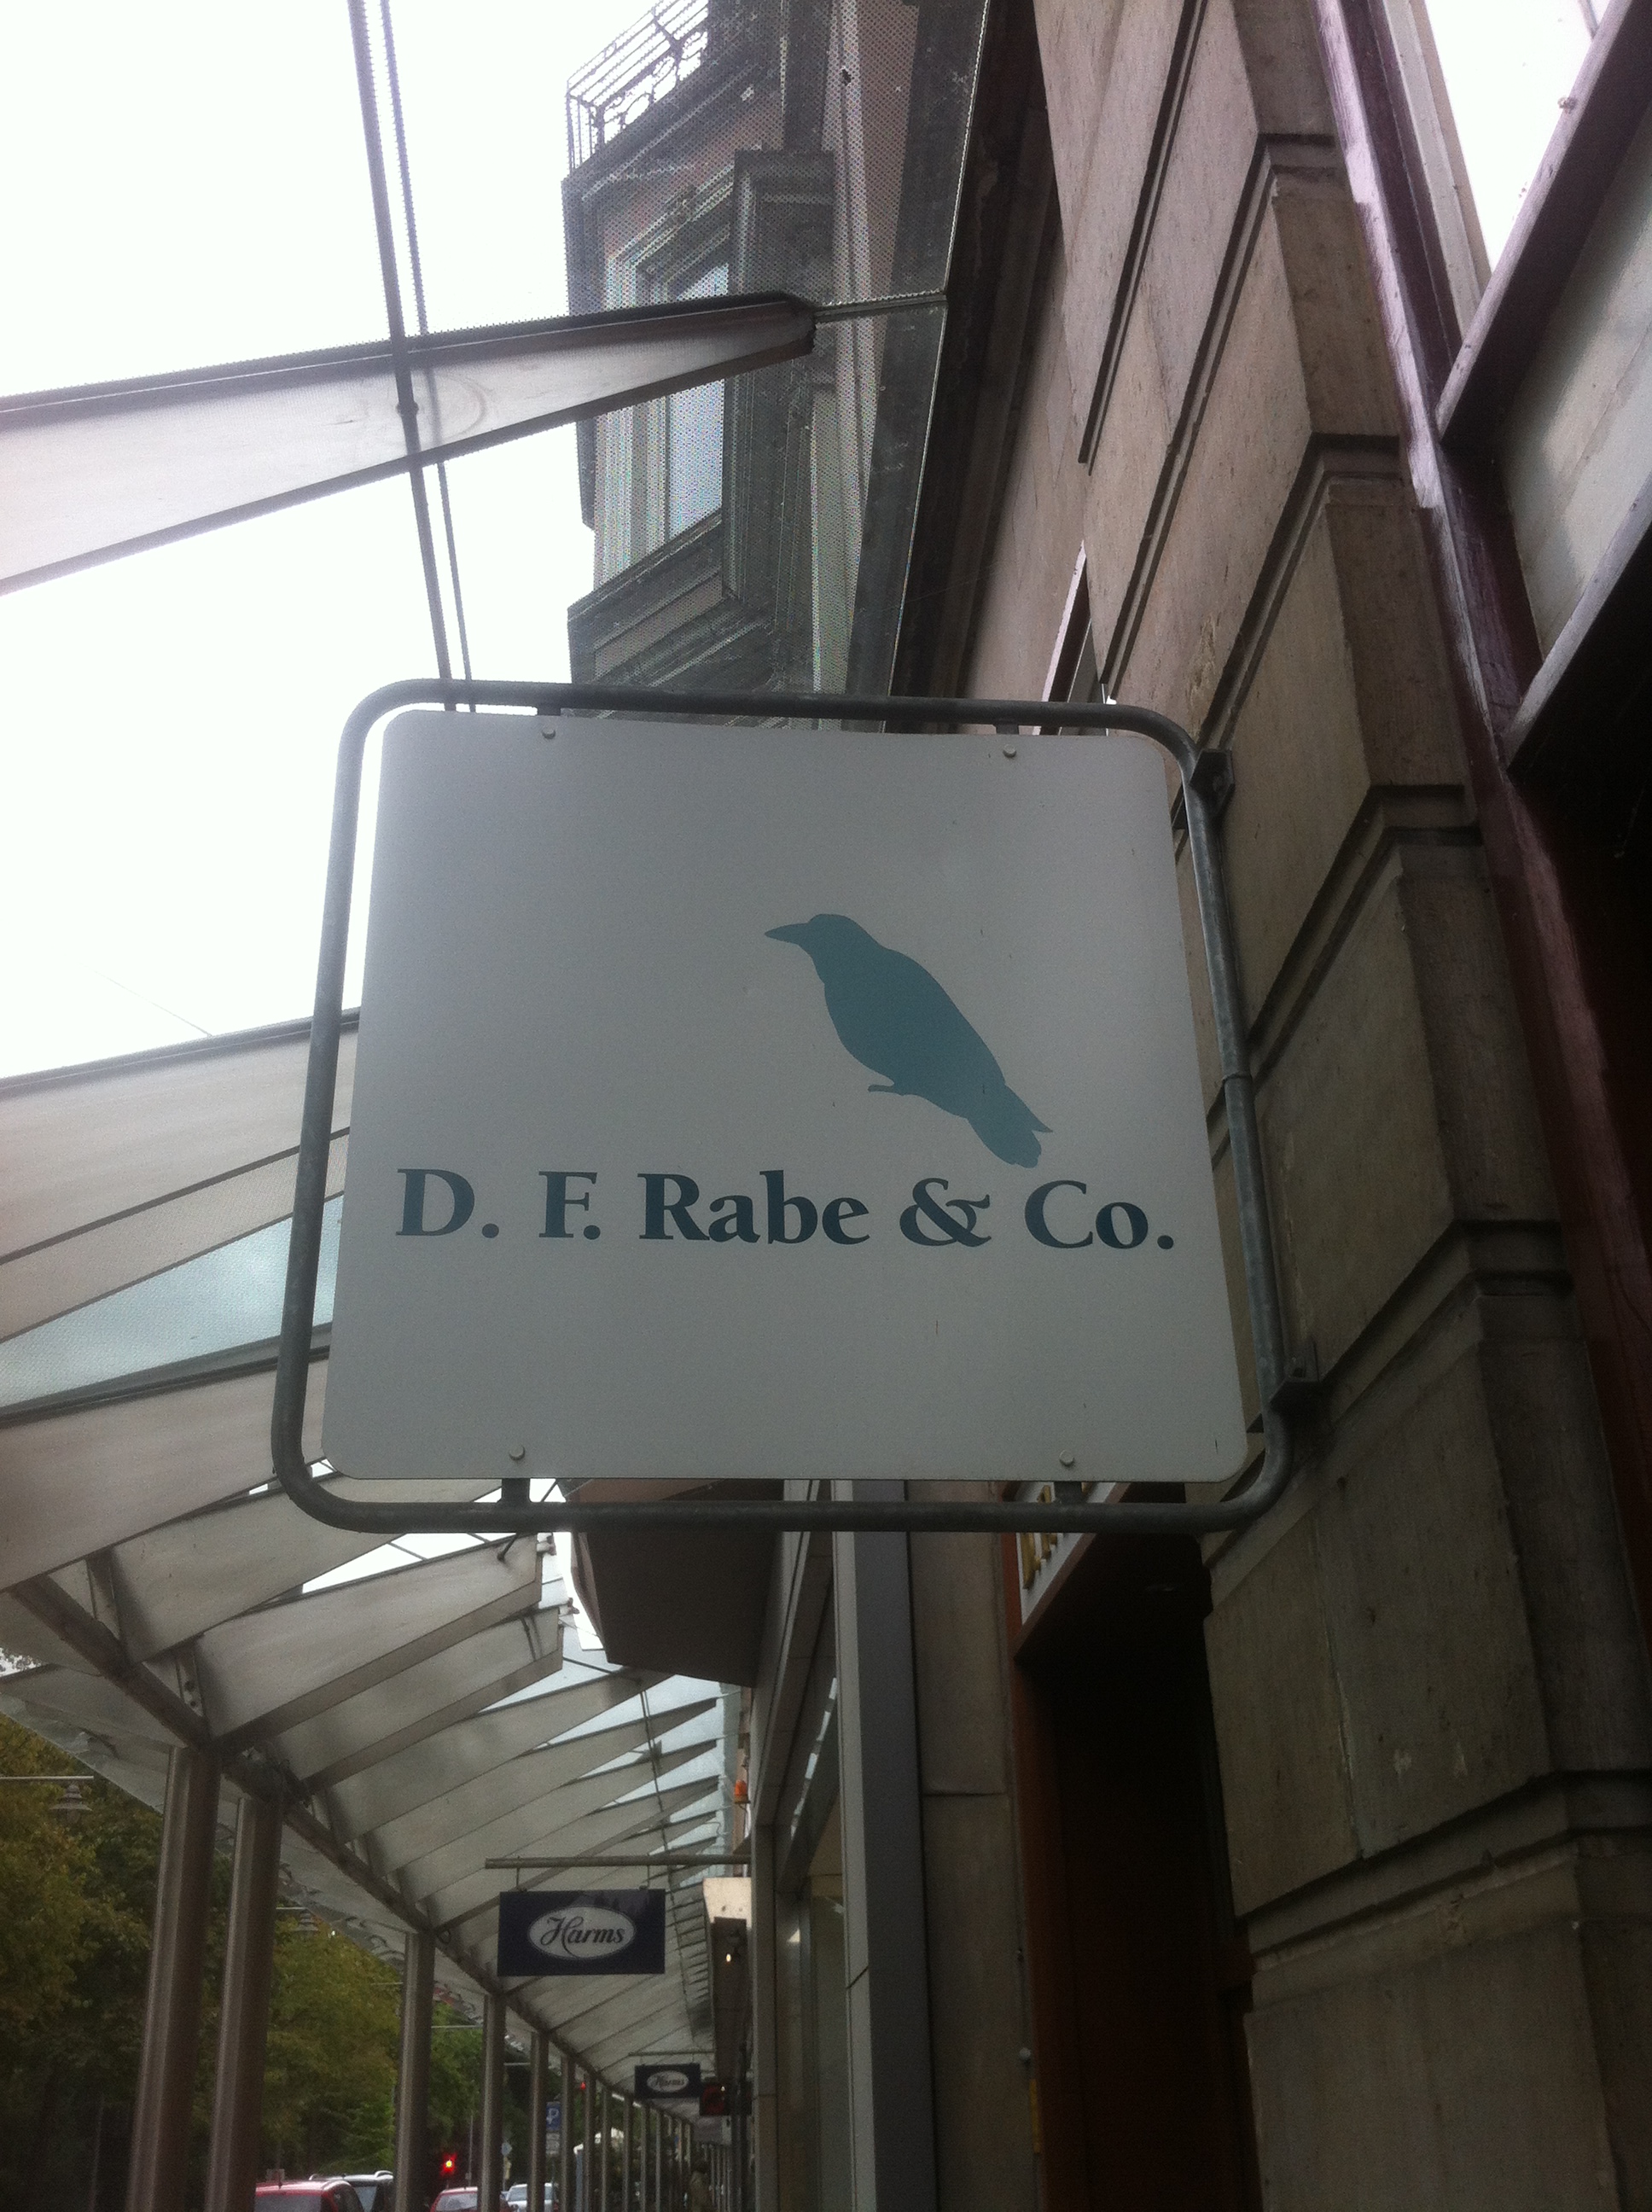 Bild 1 Rabe & Co., D. F. in Bremen